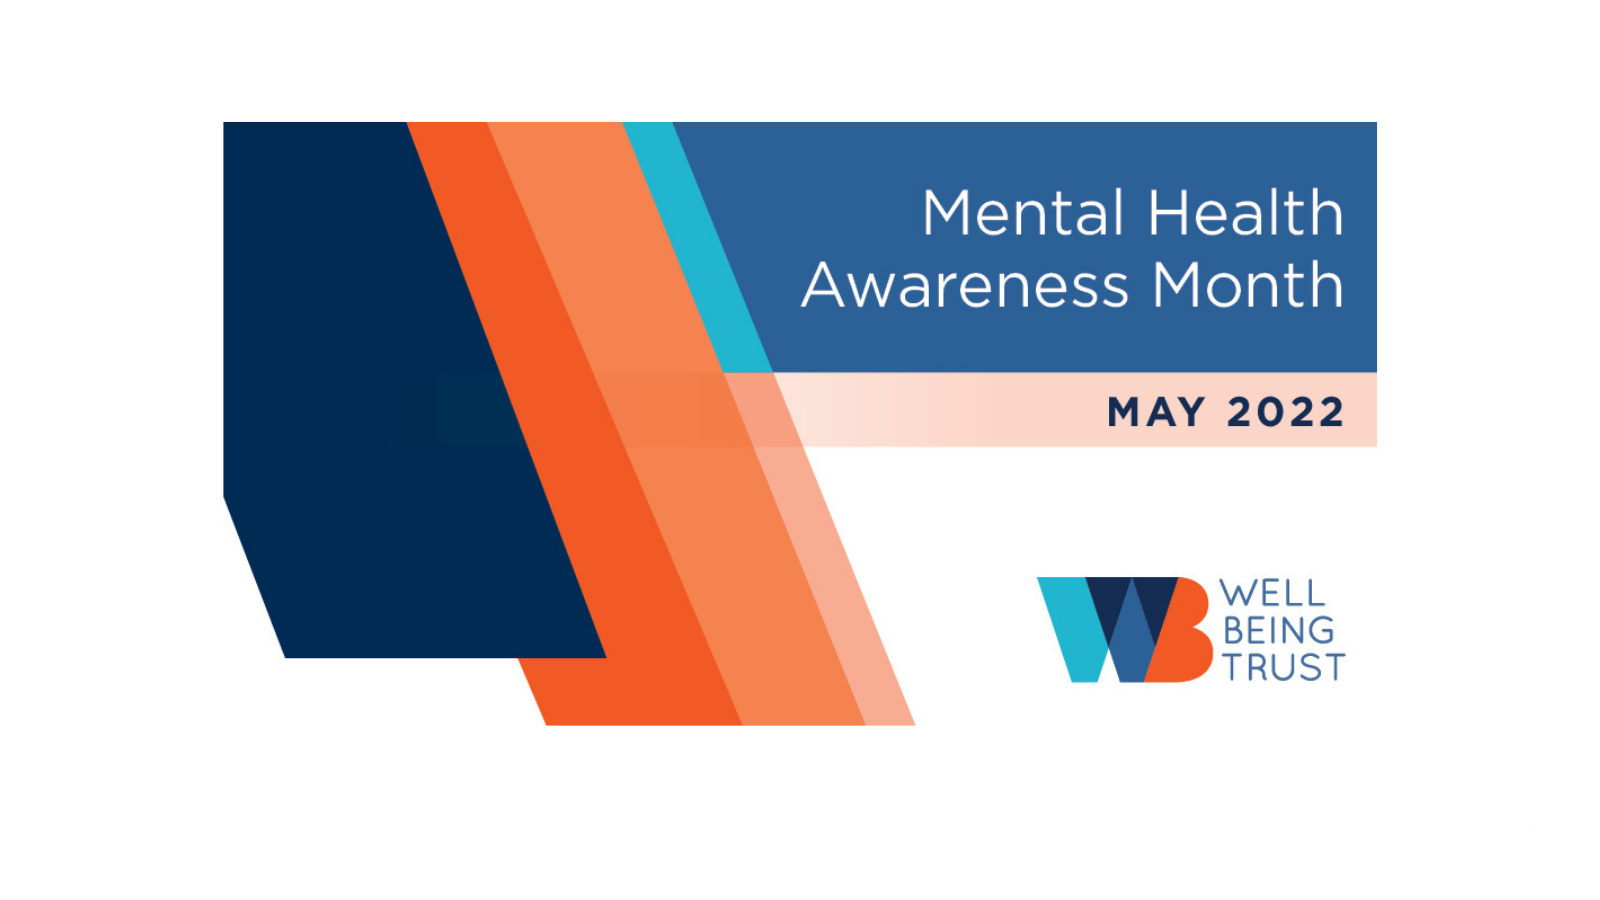 mental health awareness week 2022